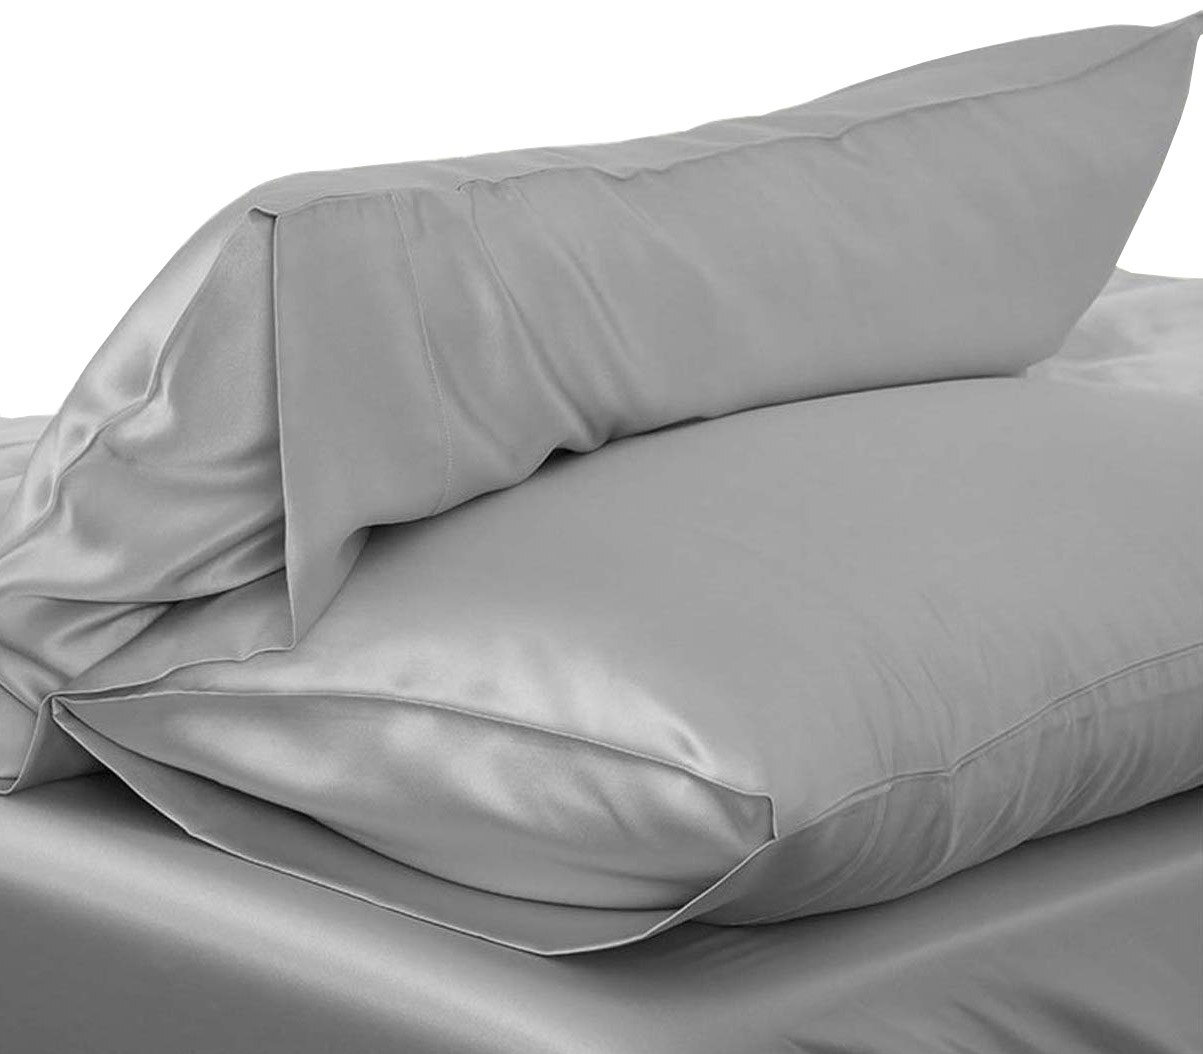 1pc 51*76cm luksus silkeagtig satin pudebetræk pudebetræk ensfarvet standard pudebetræk pudebetræk baby sengetøj: Sølv